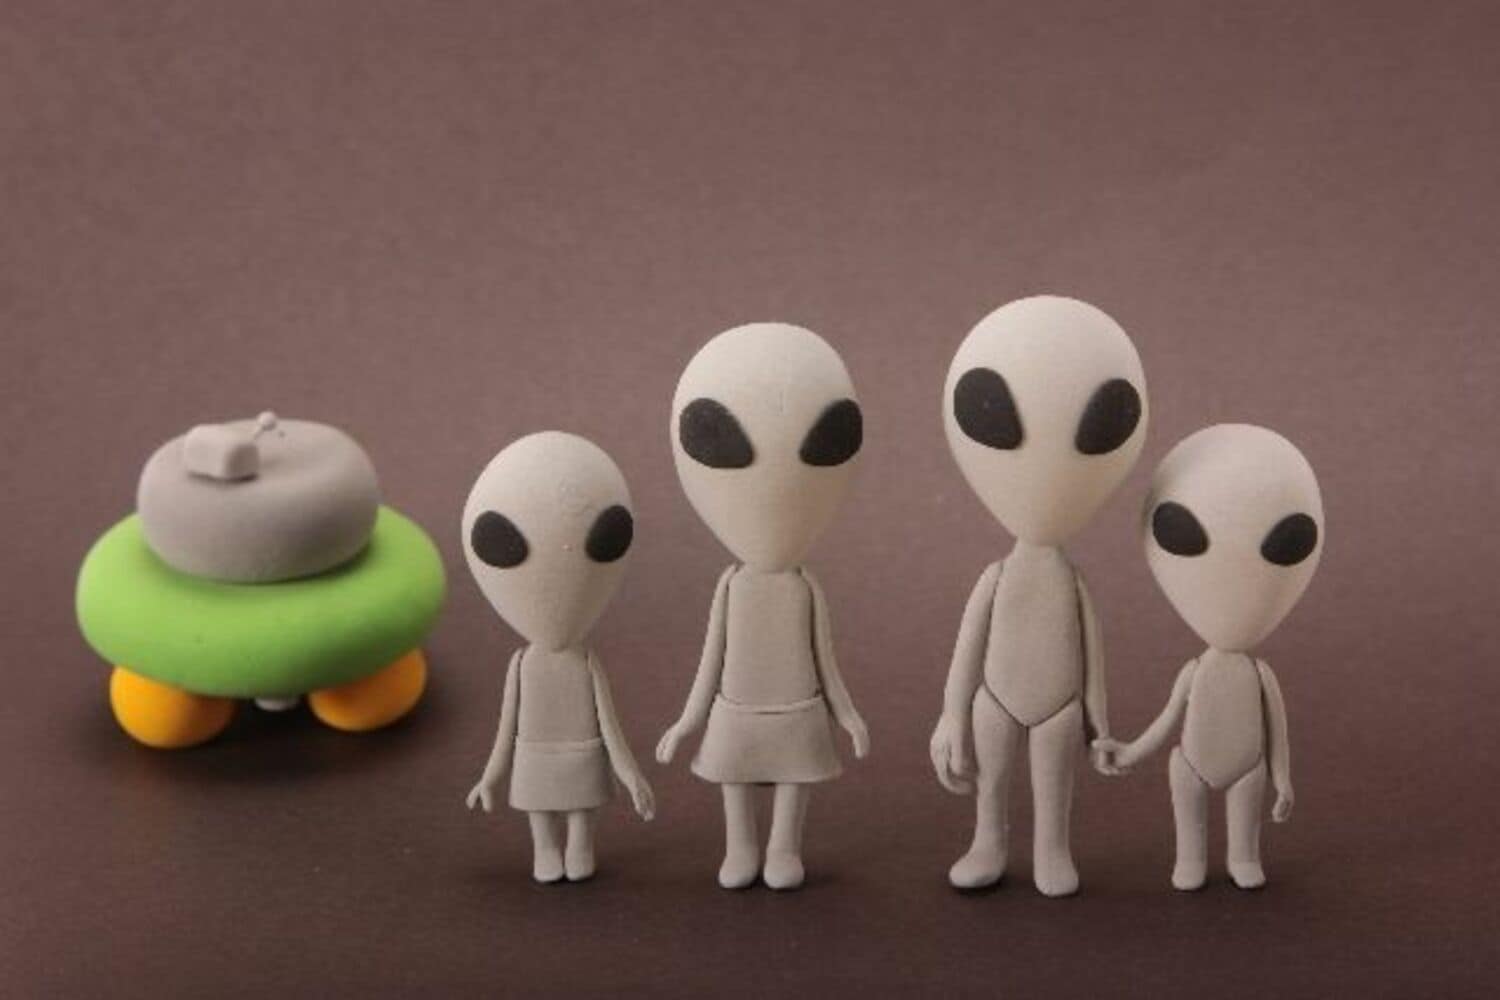 米・大統領選で、政府が「宇宙人の存在」をついに発表!?の画像